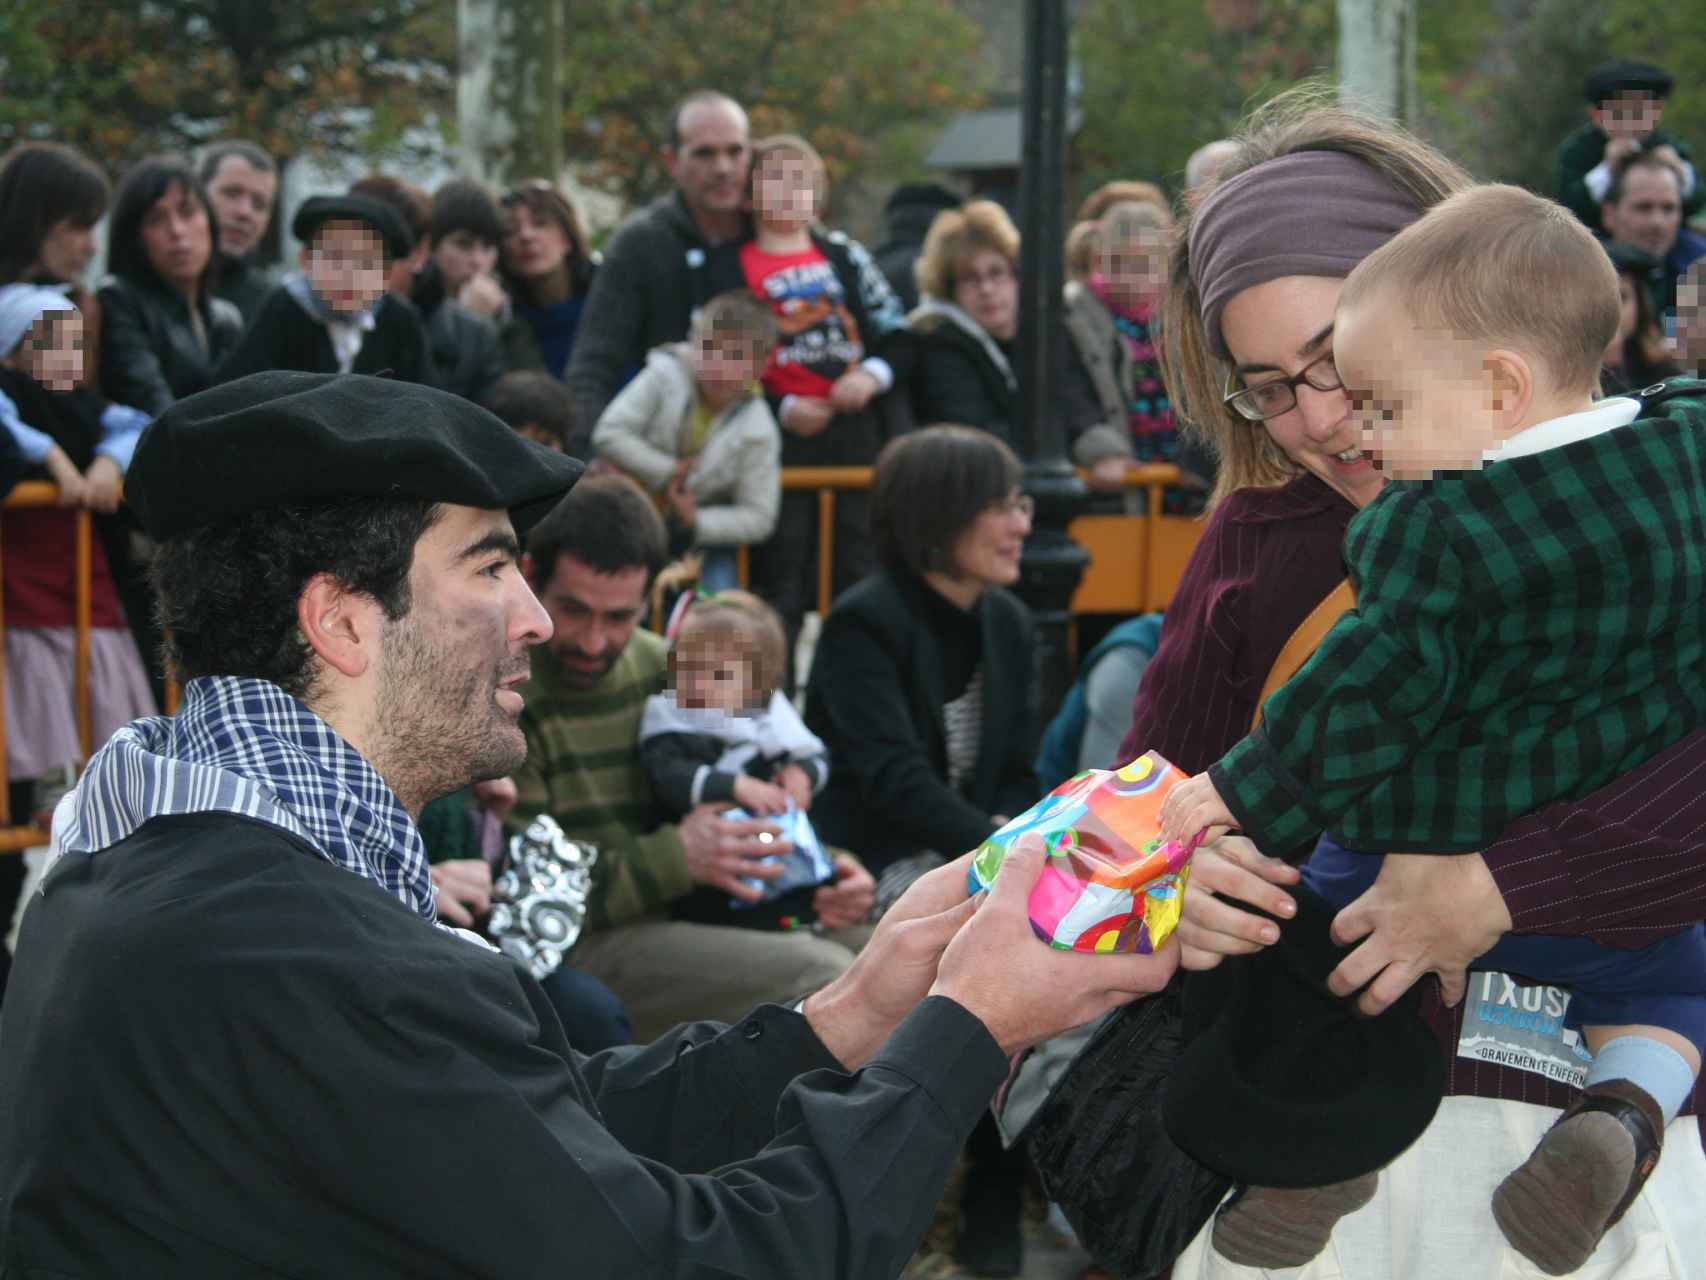 El olentzero, famoso carbonero que trae los regalos a los niños en buena parte del País Vasco y Navarra.